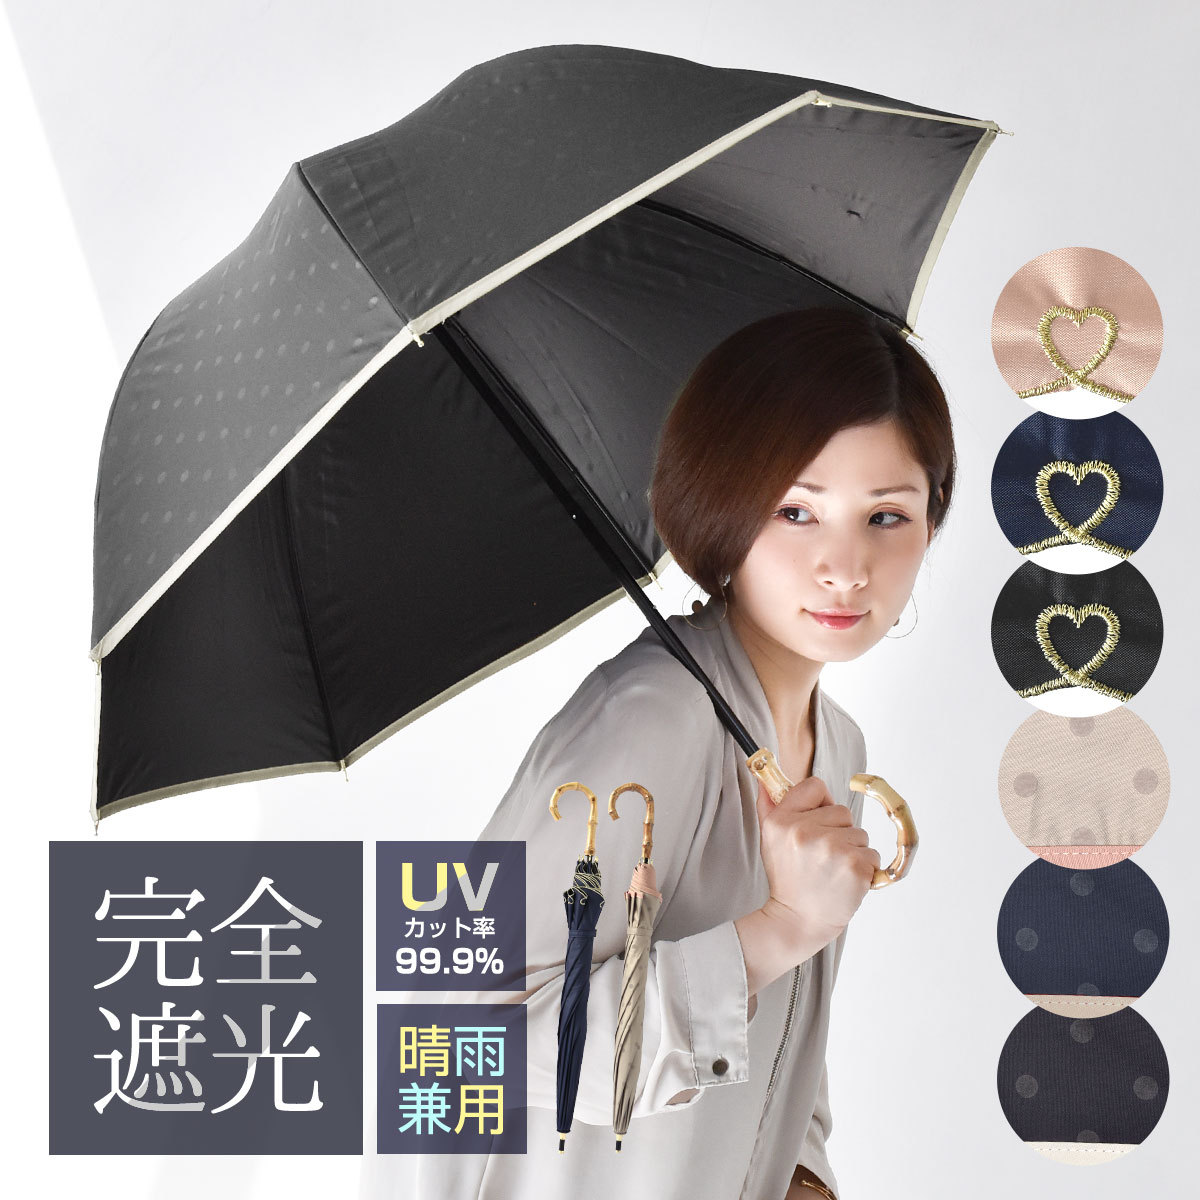 自動開閉 黒 折りたたみ傘 日傘 晴雨兼用 完全遮光UVカット率99.9% 韓国